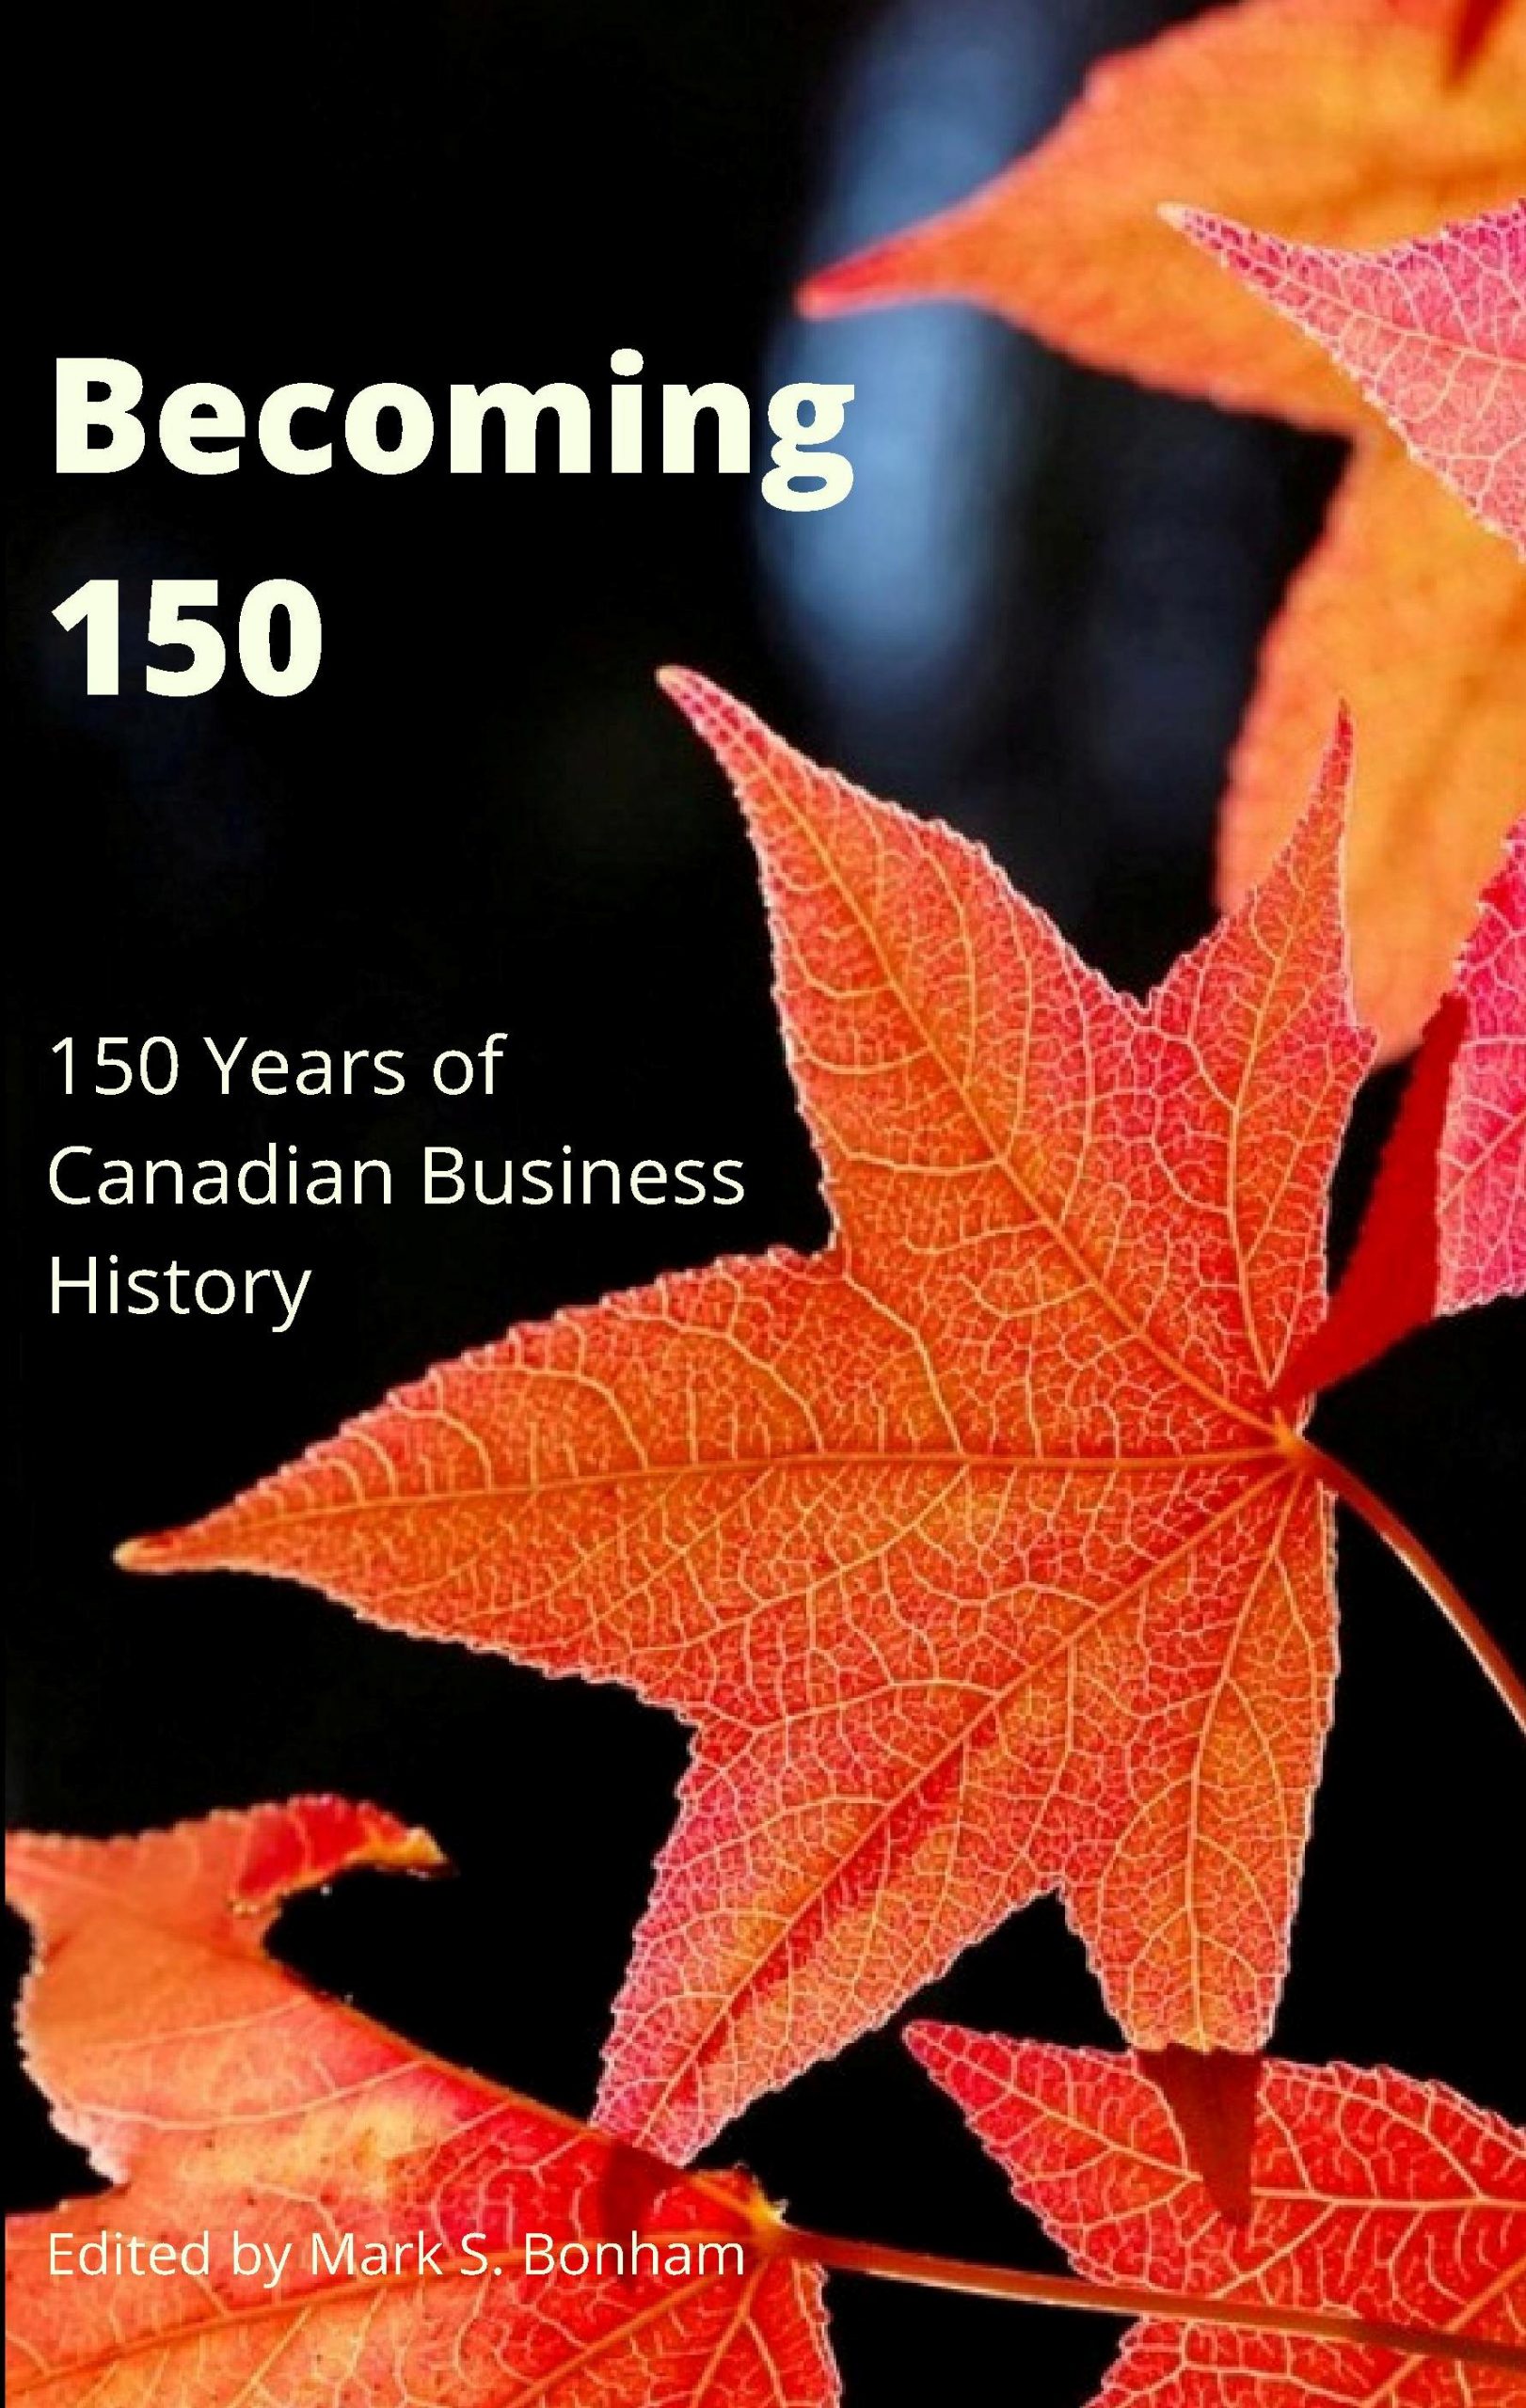 Vidéo de lancement de livre pour «Becoming 150» maintenant sur la chaîne YouTube CBHA / ACHA